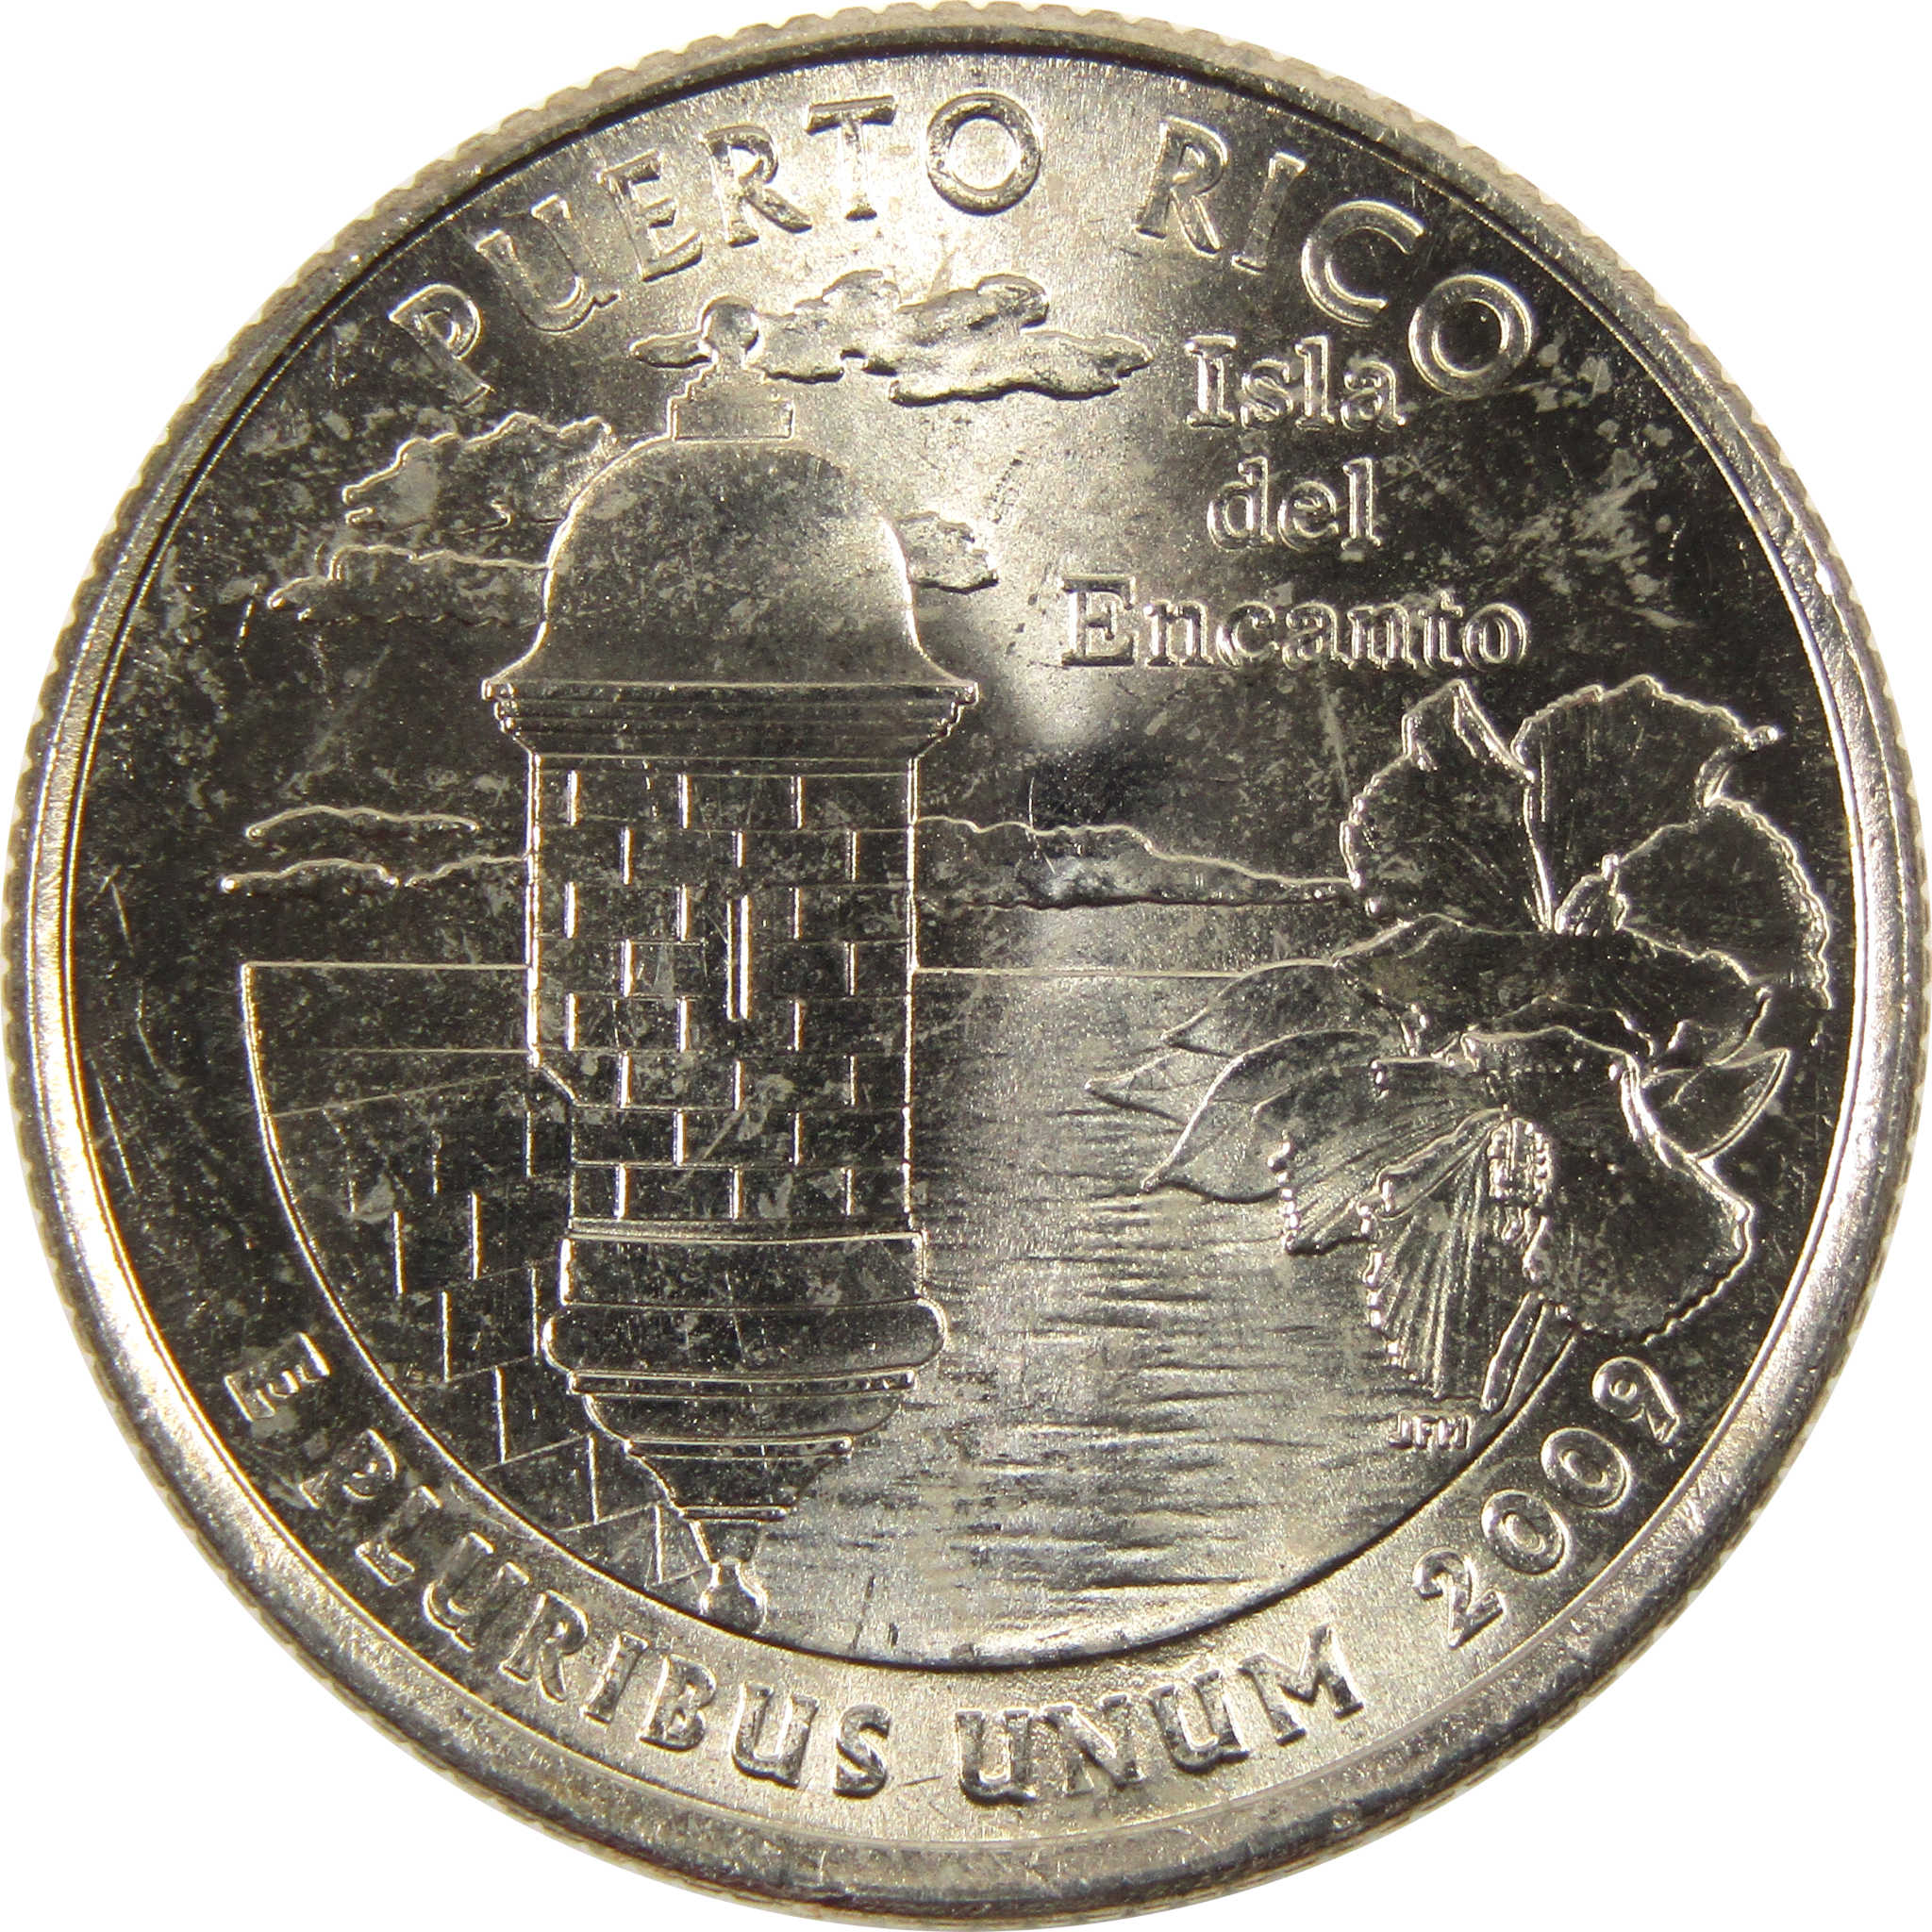 2009 P Puerto Rico Territories Quarter BU Uncirculated Clad 25c Coin